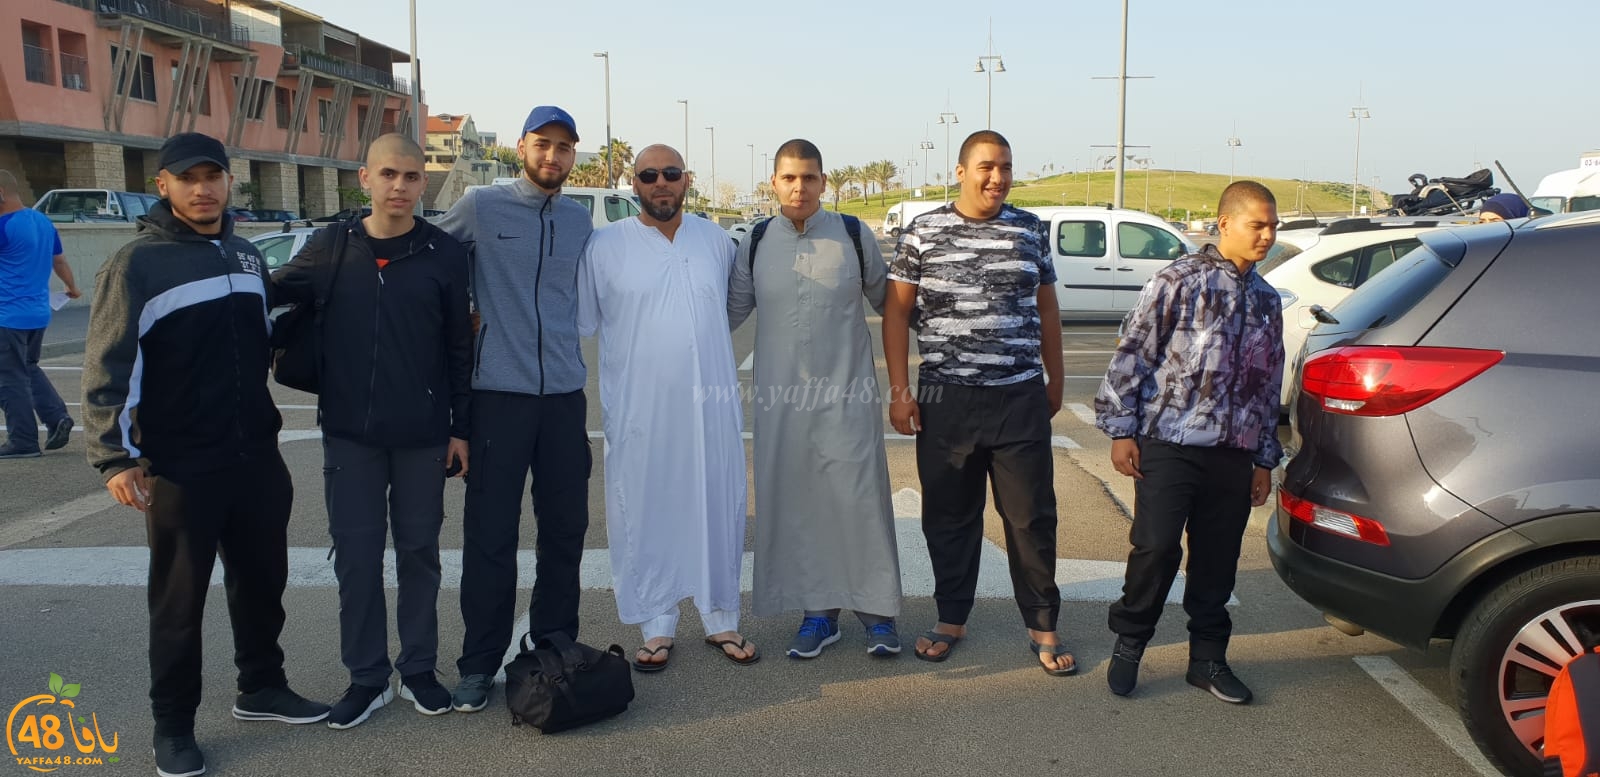 بالصور: المتأهلون الستة للمرحلة النهائية من مسابقة مزامير يافا ينطلقون لأداء العمرة